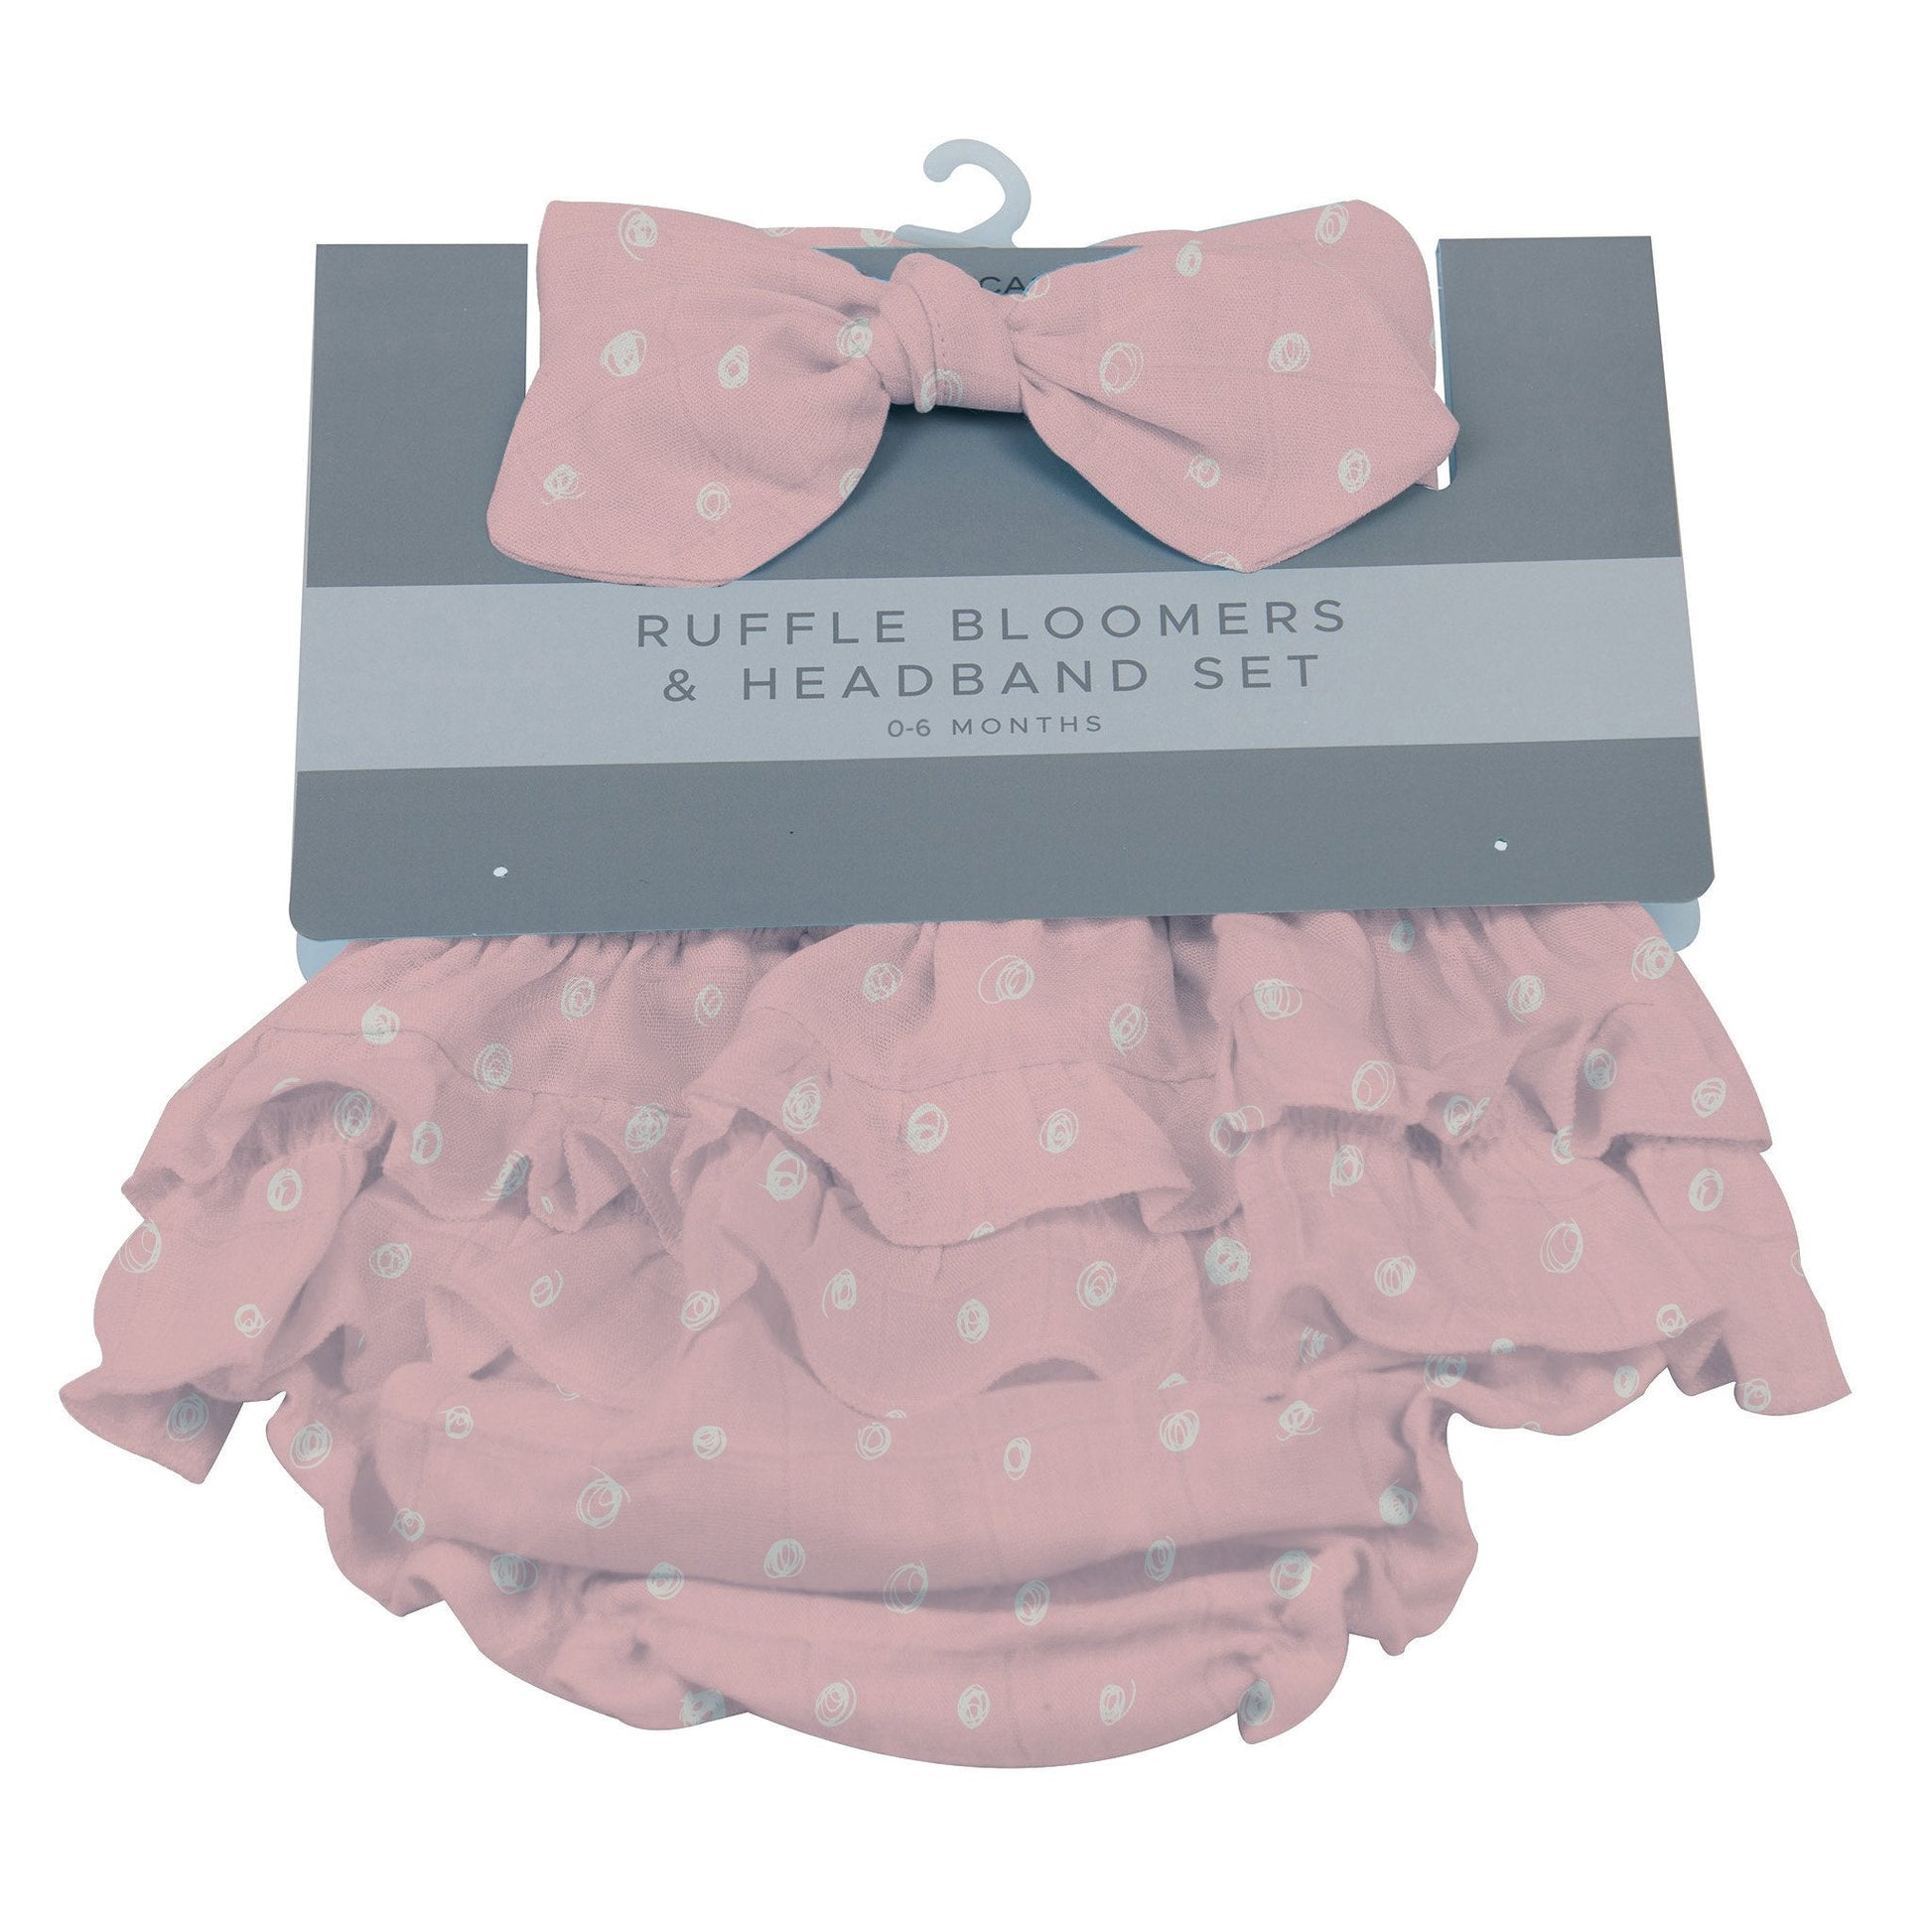 Baby Ruffle Bloomers & Headband Set | Pink Pearl Polka Dot -0